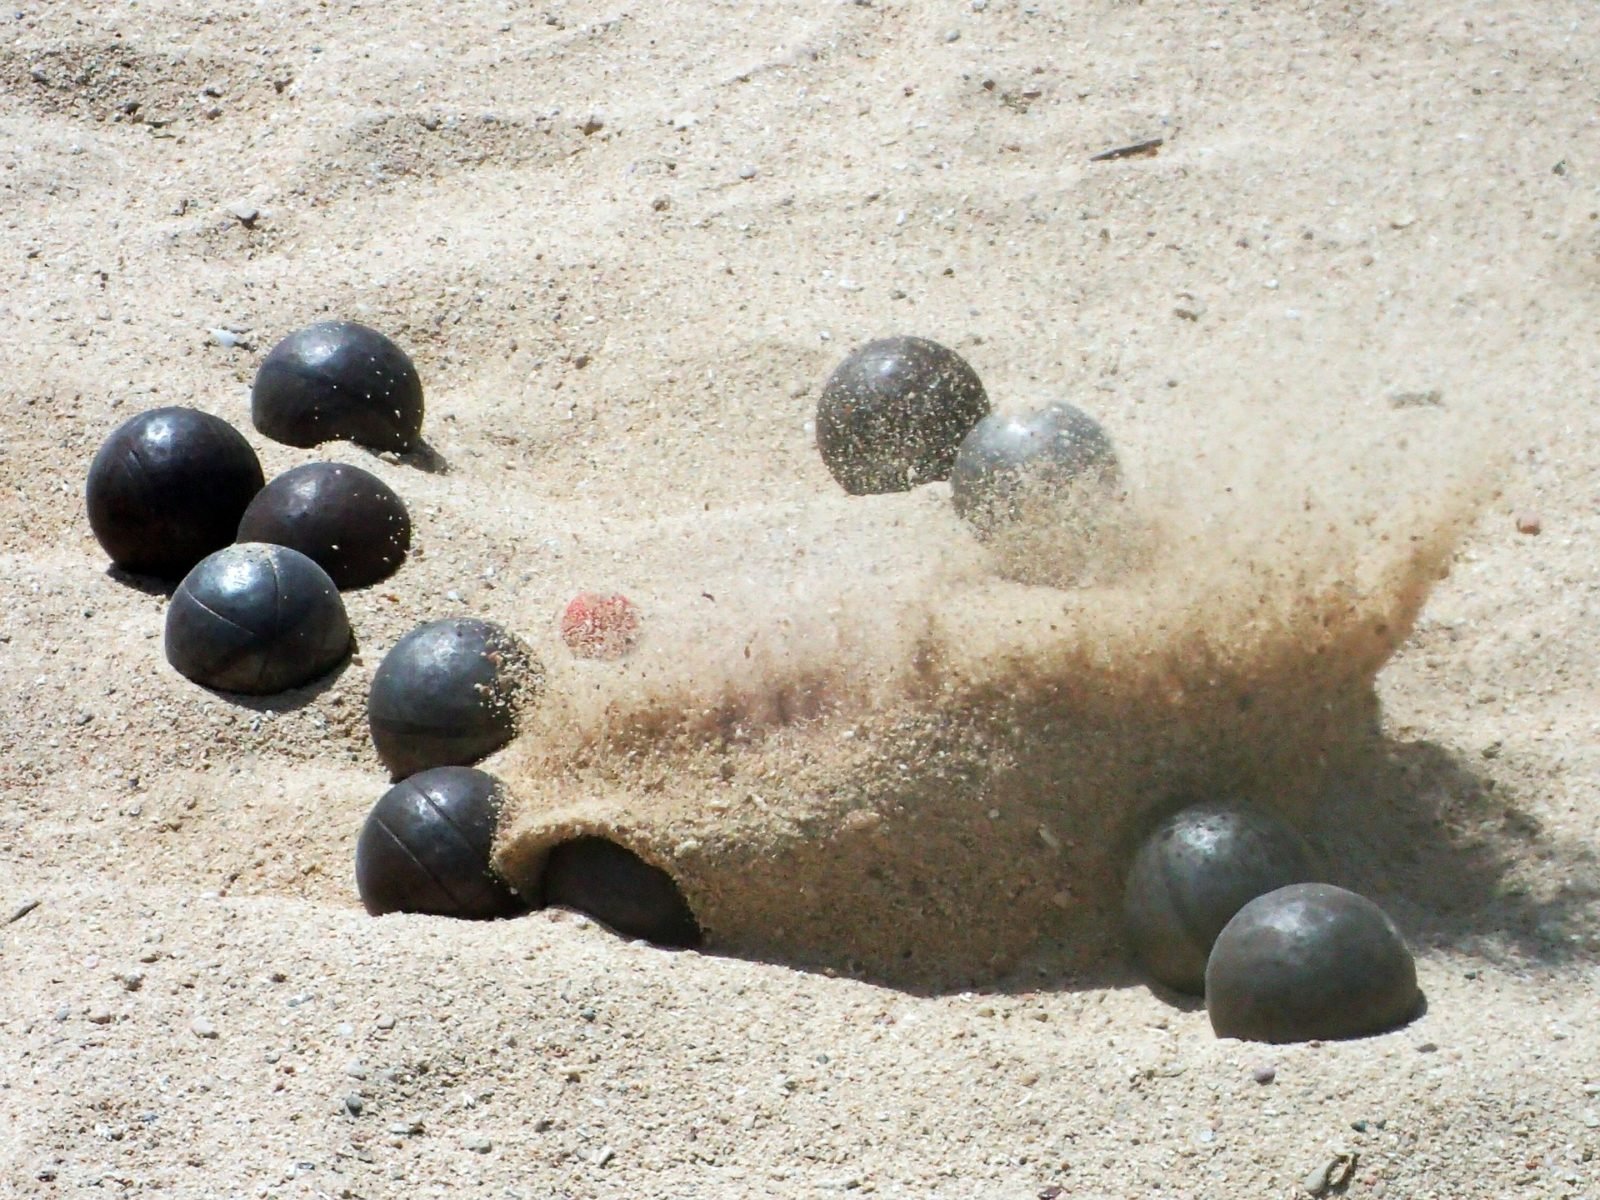 Bocciakugel schlägt im Sand ein und wirbelt ihn auf.